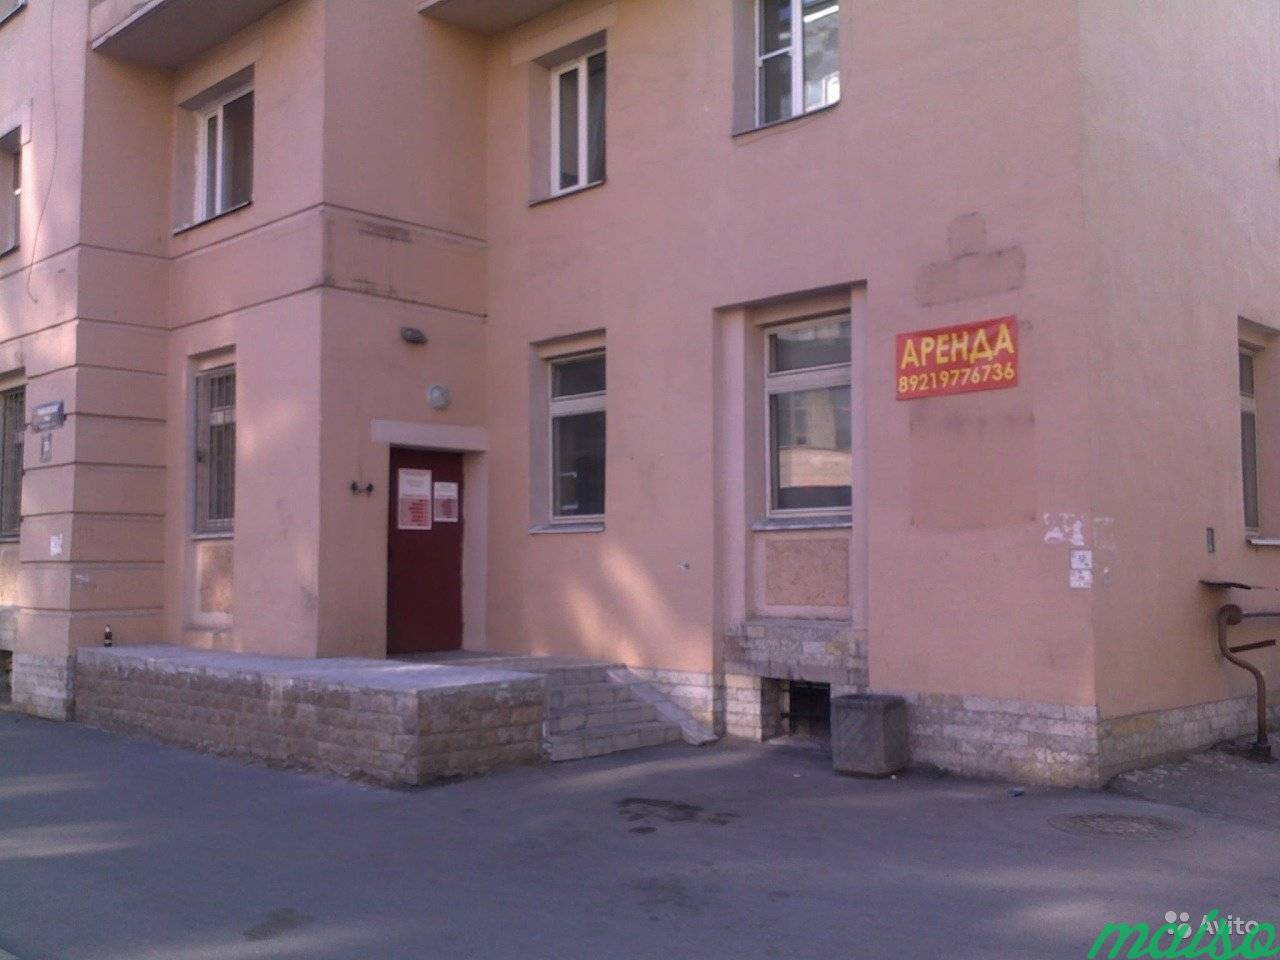 Свободного назначение, офис, хостел, автошколу 71 в Санкт-Петербурге. Фото 1